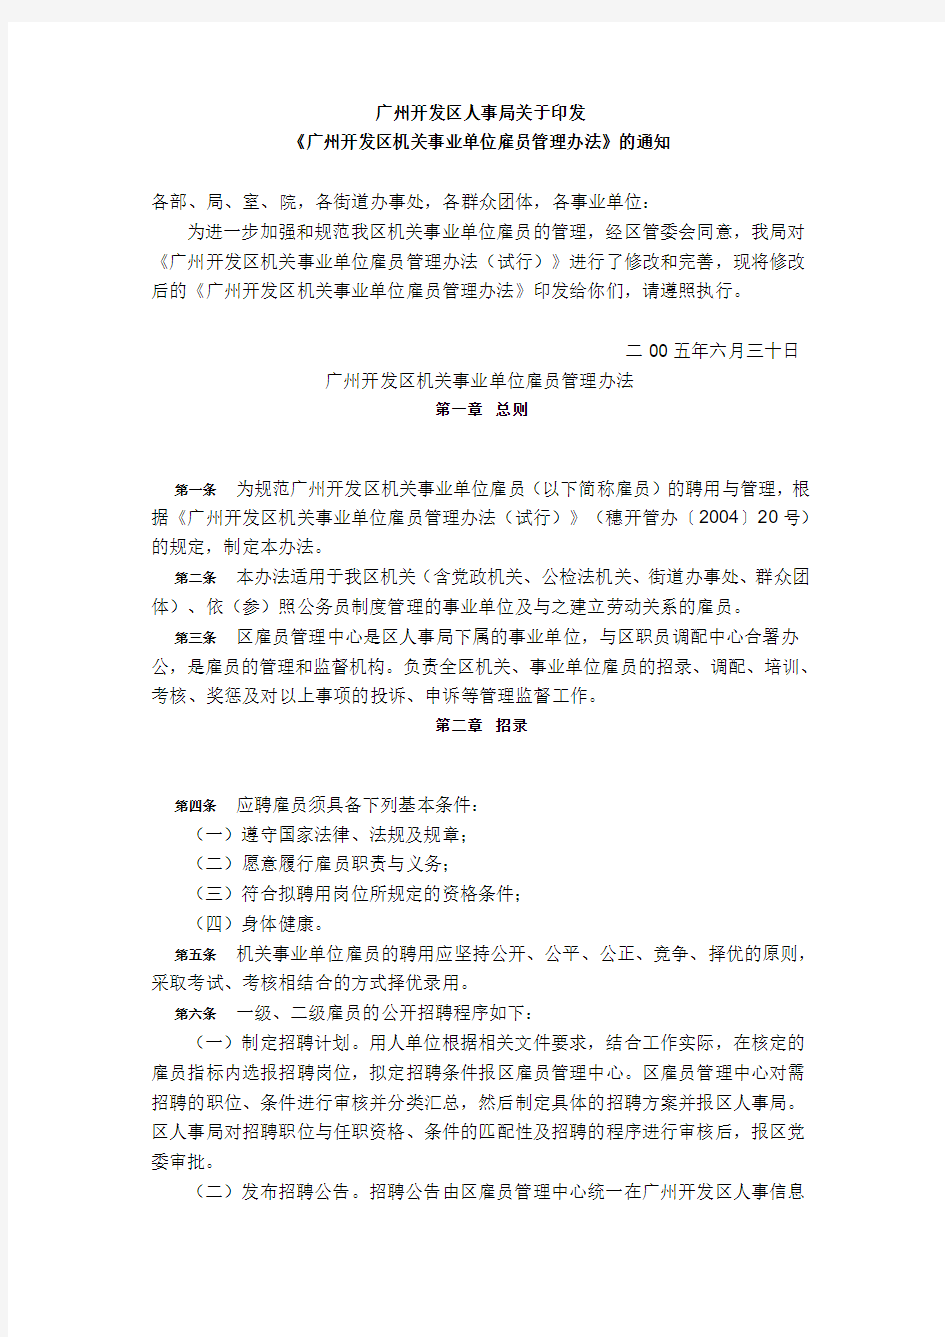 广州开发区机关事业单位雇员管理办法